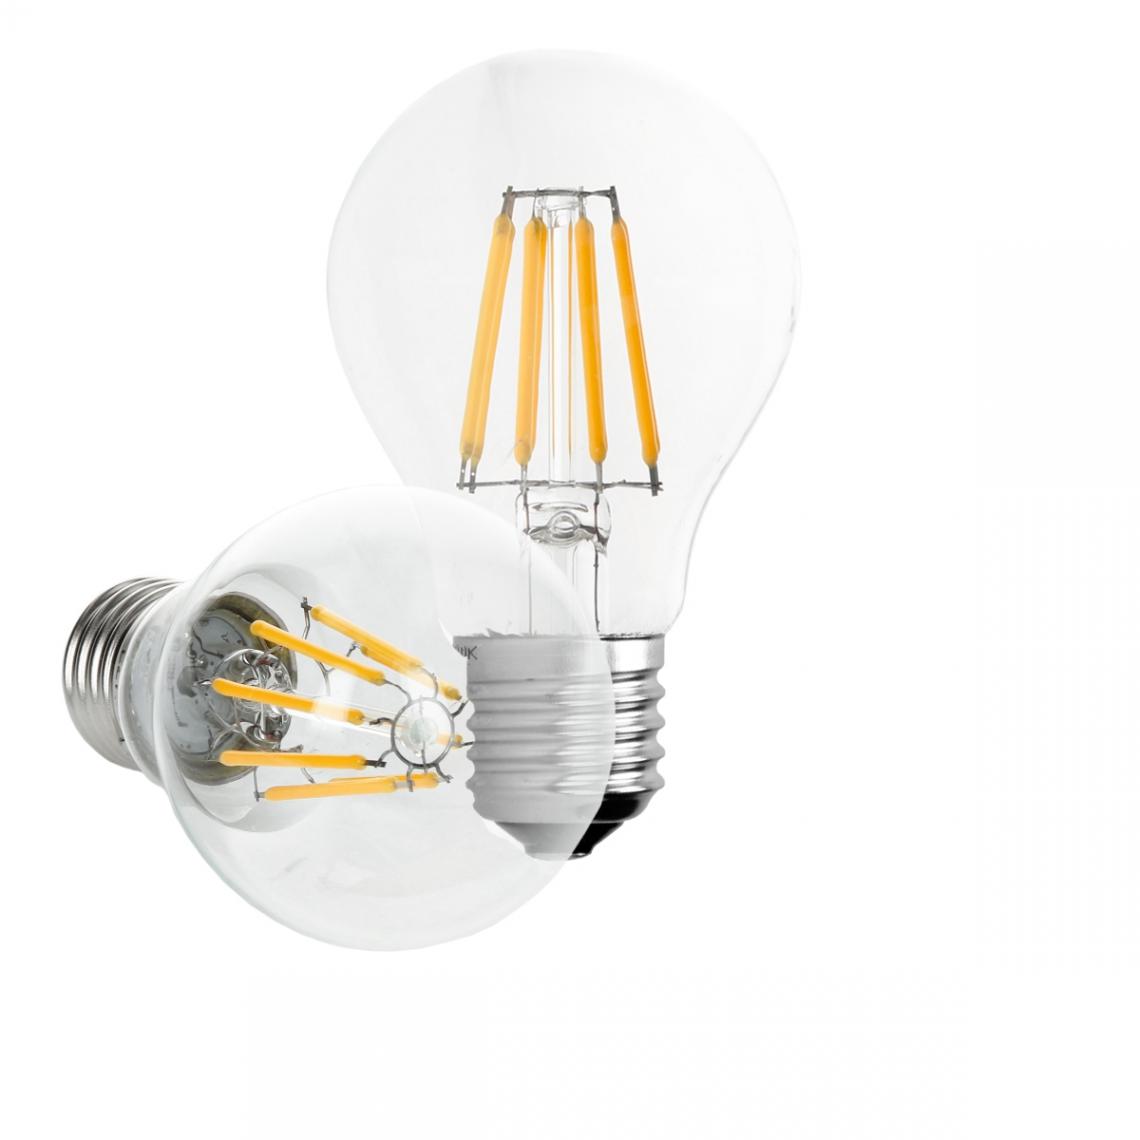 Ecd Germany - ECD Germany 5 x LED Filament de l'ampoule E27 classique Edison 8W 816 lumens angle de faisceau 120 ° AC 220-240 reste caché et remplace environ 45W lampe incandescente Blanc chaud - Ampoules LED